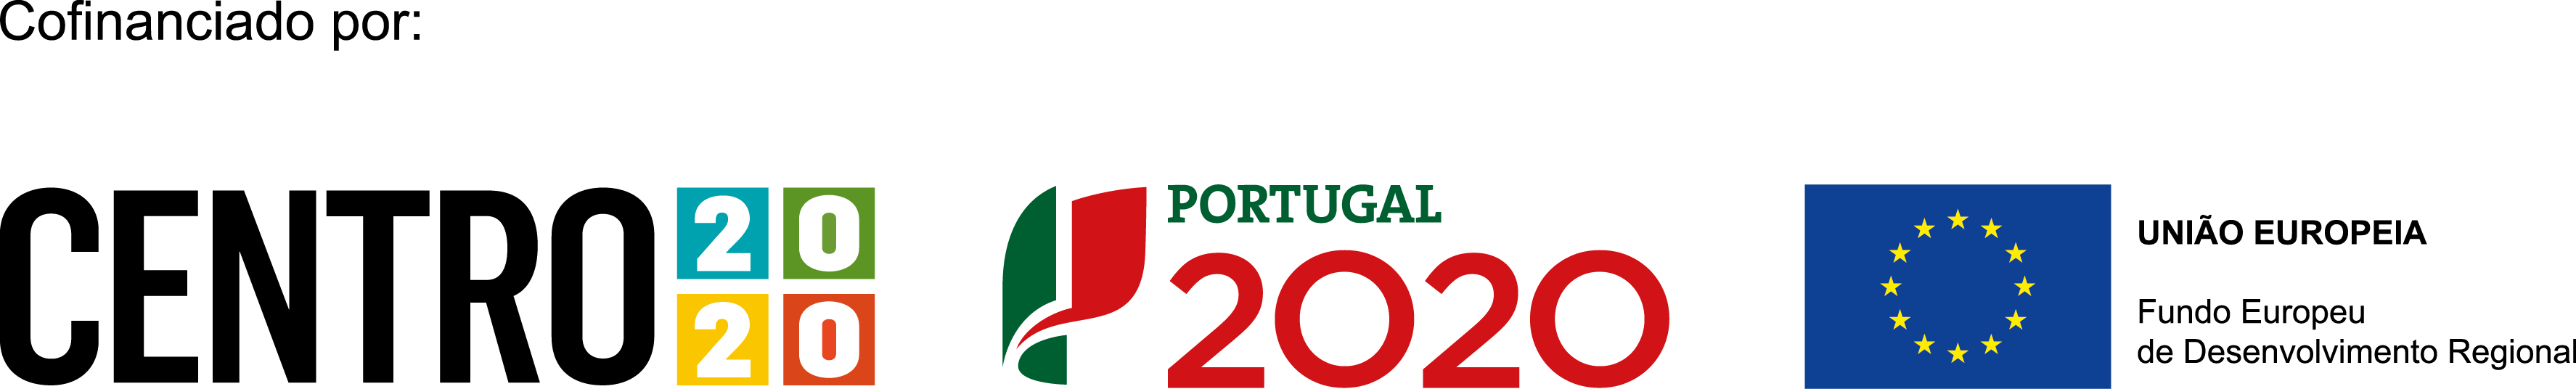 Co-financiado por: Centro 2020, Portugal 2020 e União Europeia